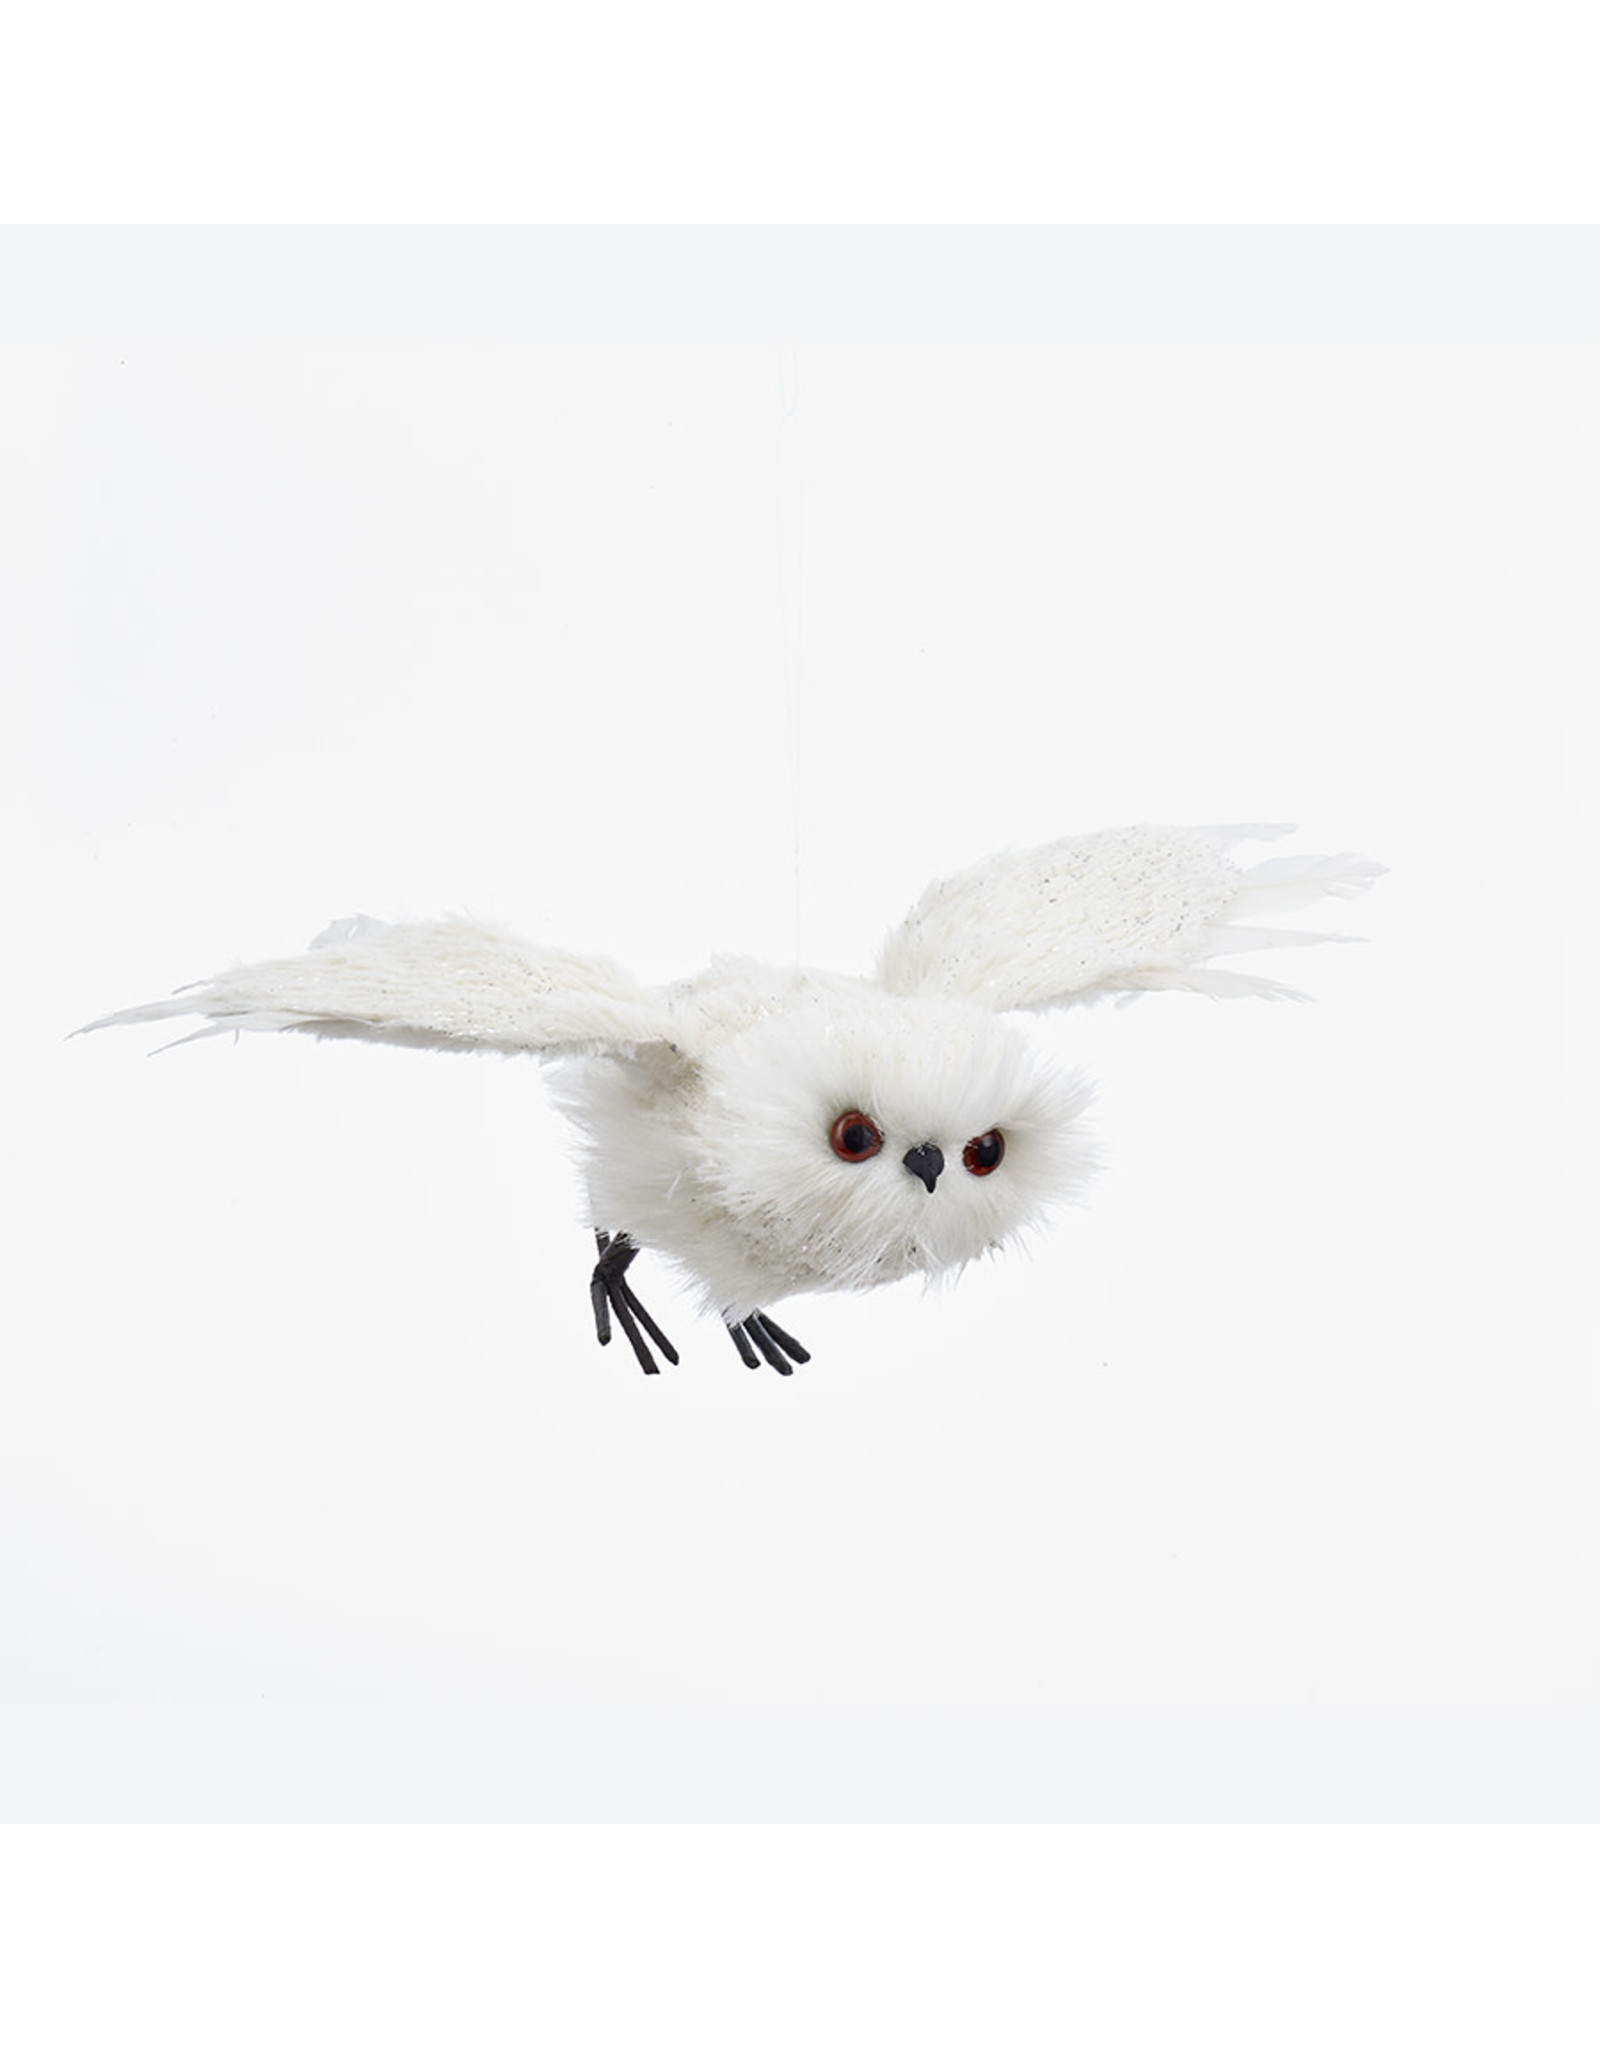 Kurt Adler Flying White Owl Ornament 13.4 Inch